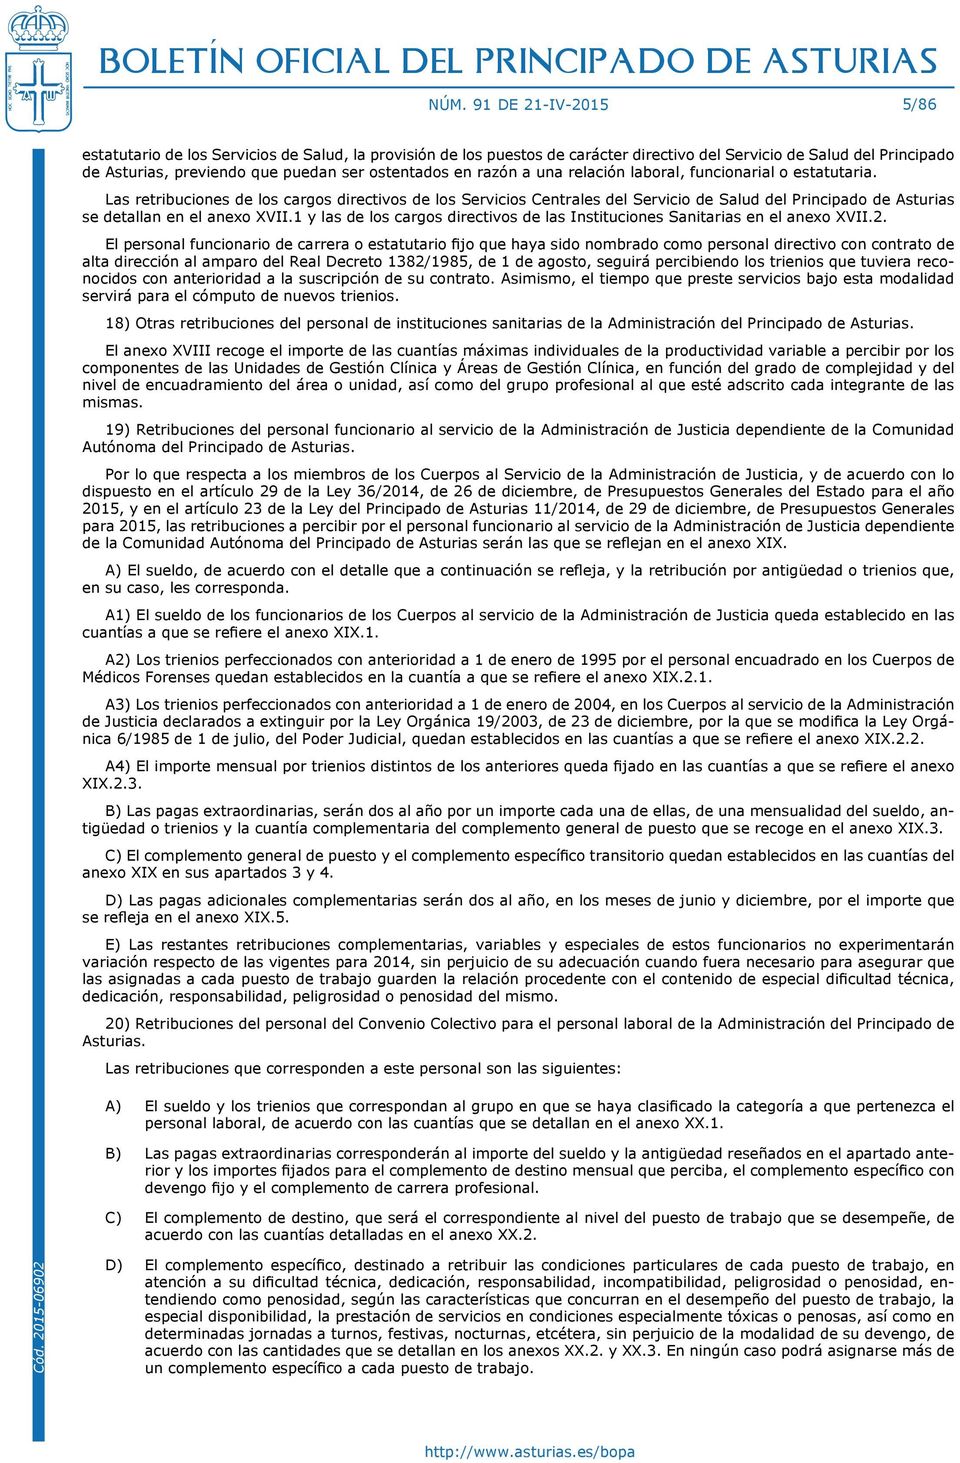 Las retribuciones de los cargos directivos de los Servicios Centrales del Servicio de Salud del Principado de Asturias se detallan en el anexo XVII.